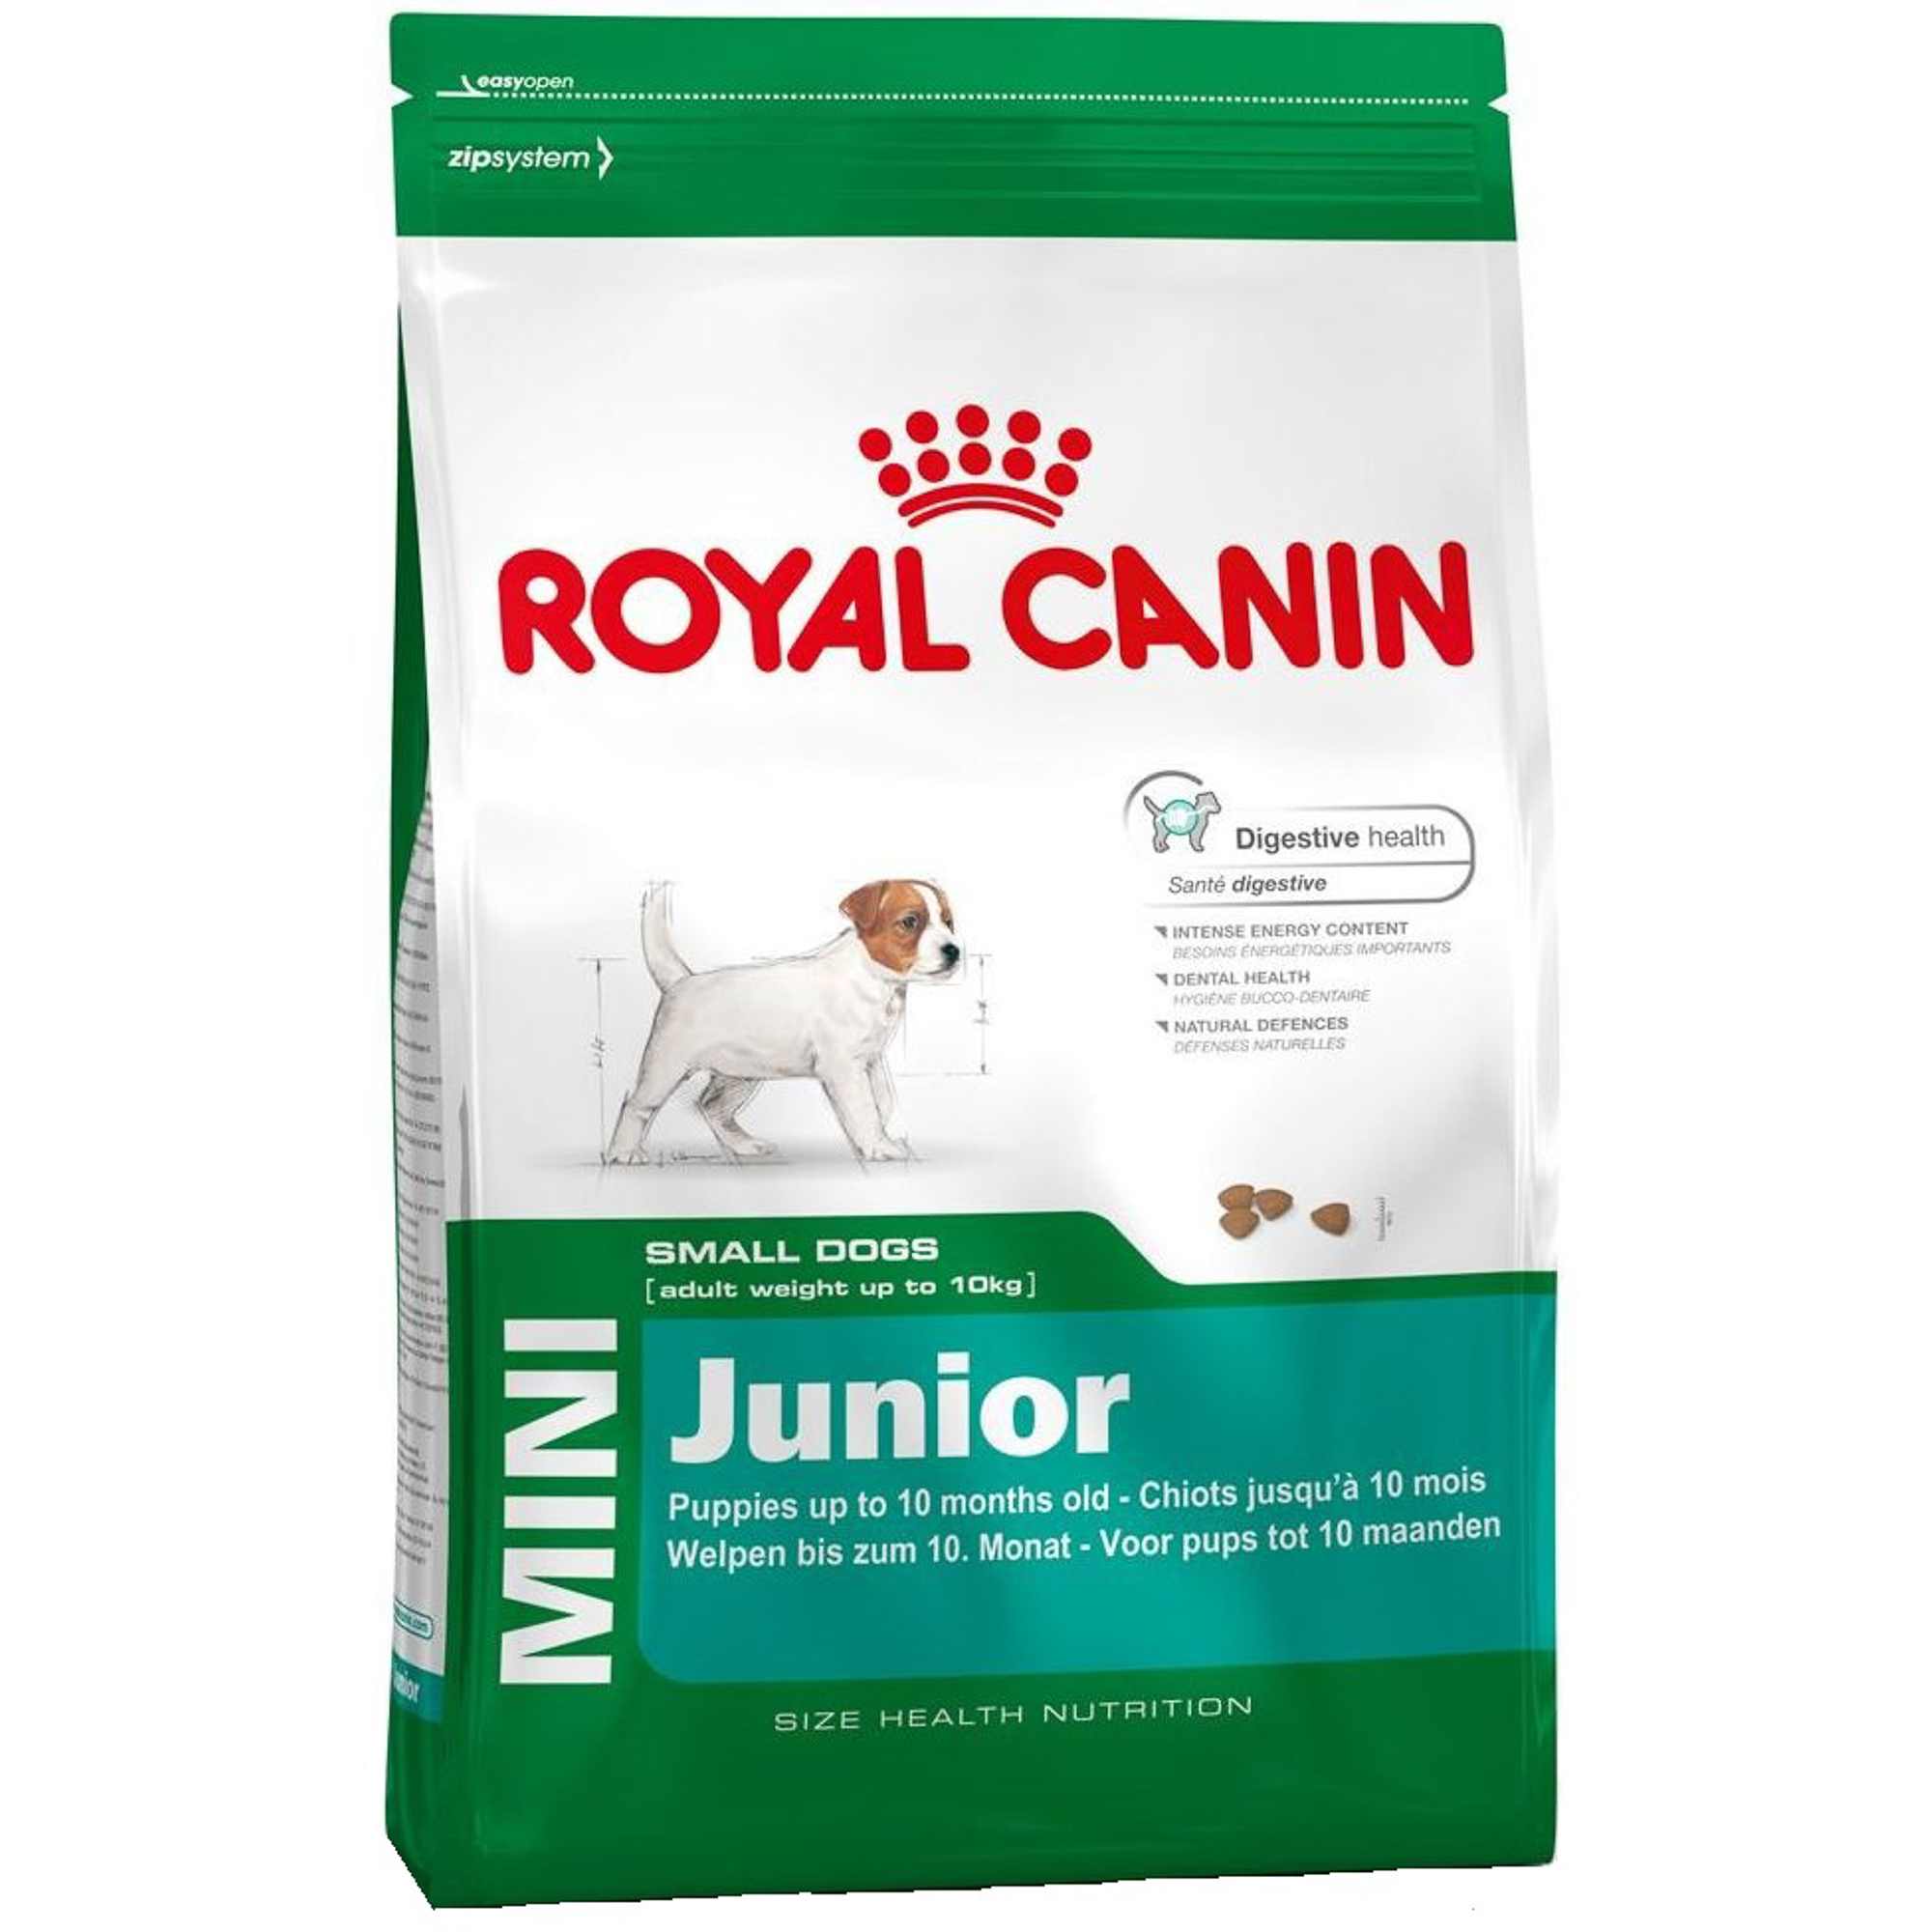 Корм для щенков Royal Canin JUNIOR для мелких пород, с 2 до 10 месяцев, 2 кг корм для щенков pro plan optistart для мелких и карликовых пород с курицей и рисом 3 кг